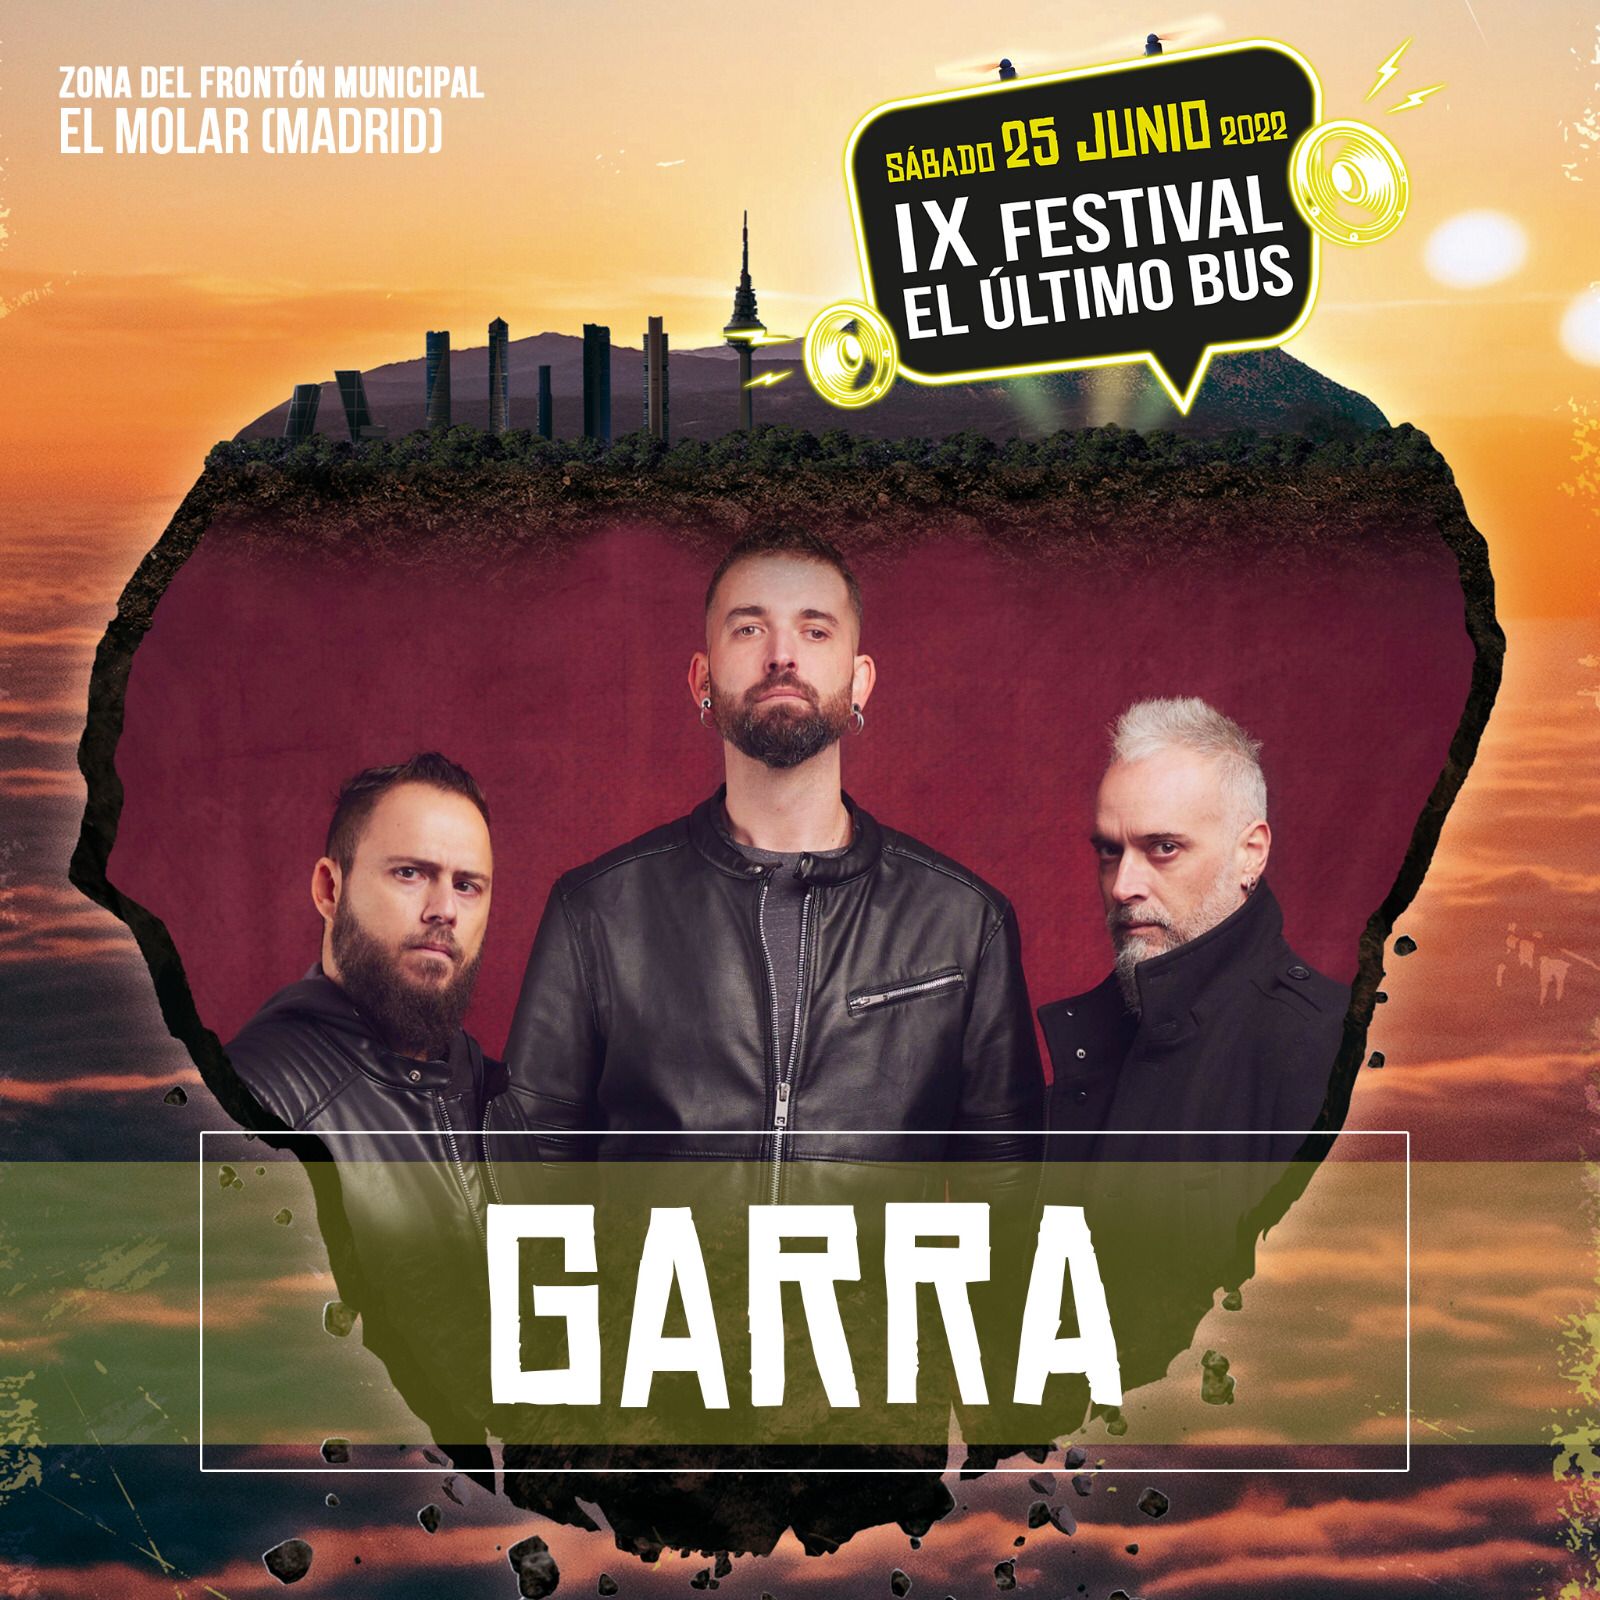 La banda GARRA gana el premio del público en la batalla de bandas de El Último Bus